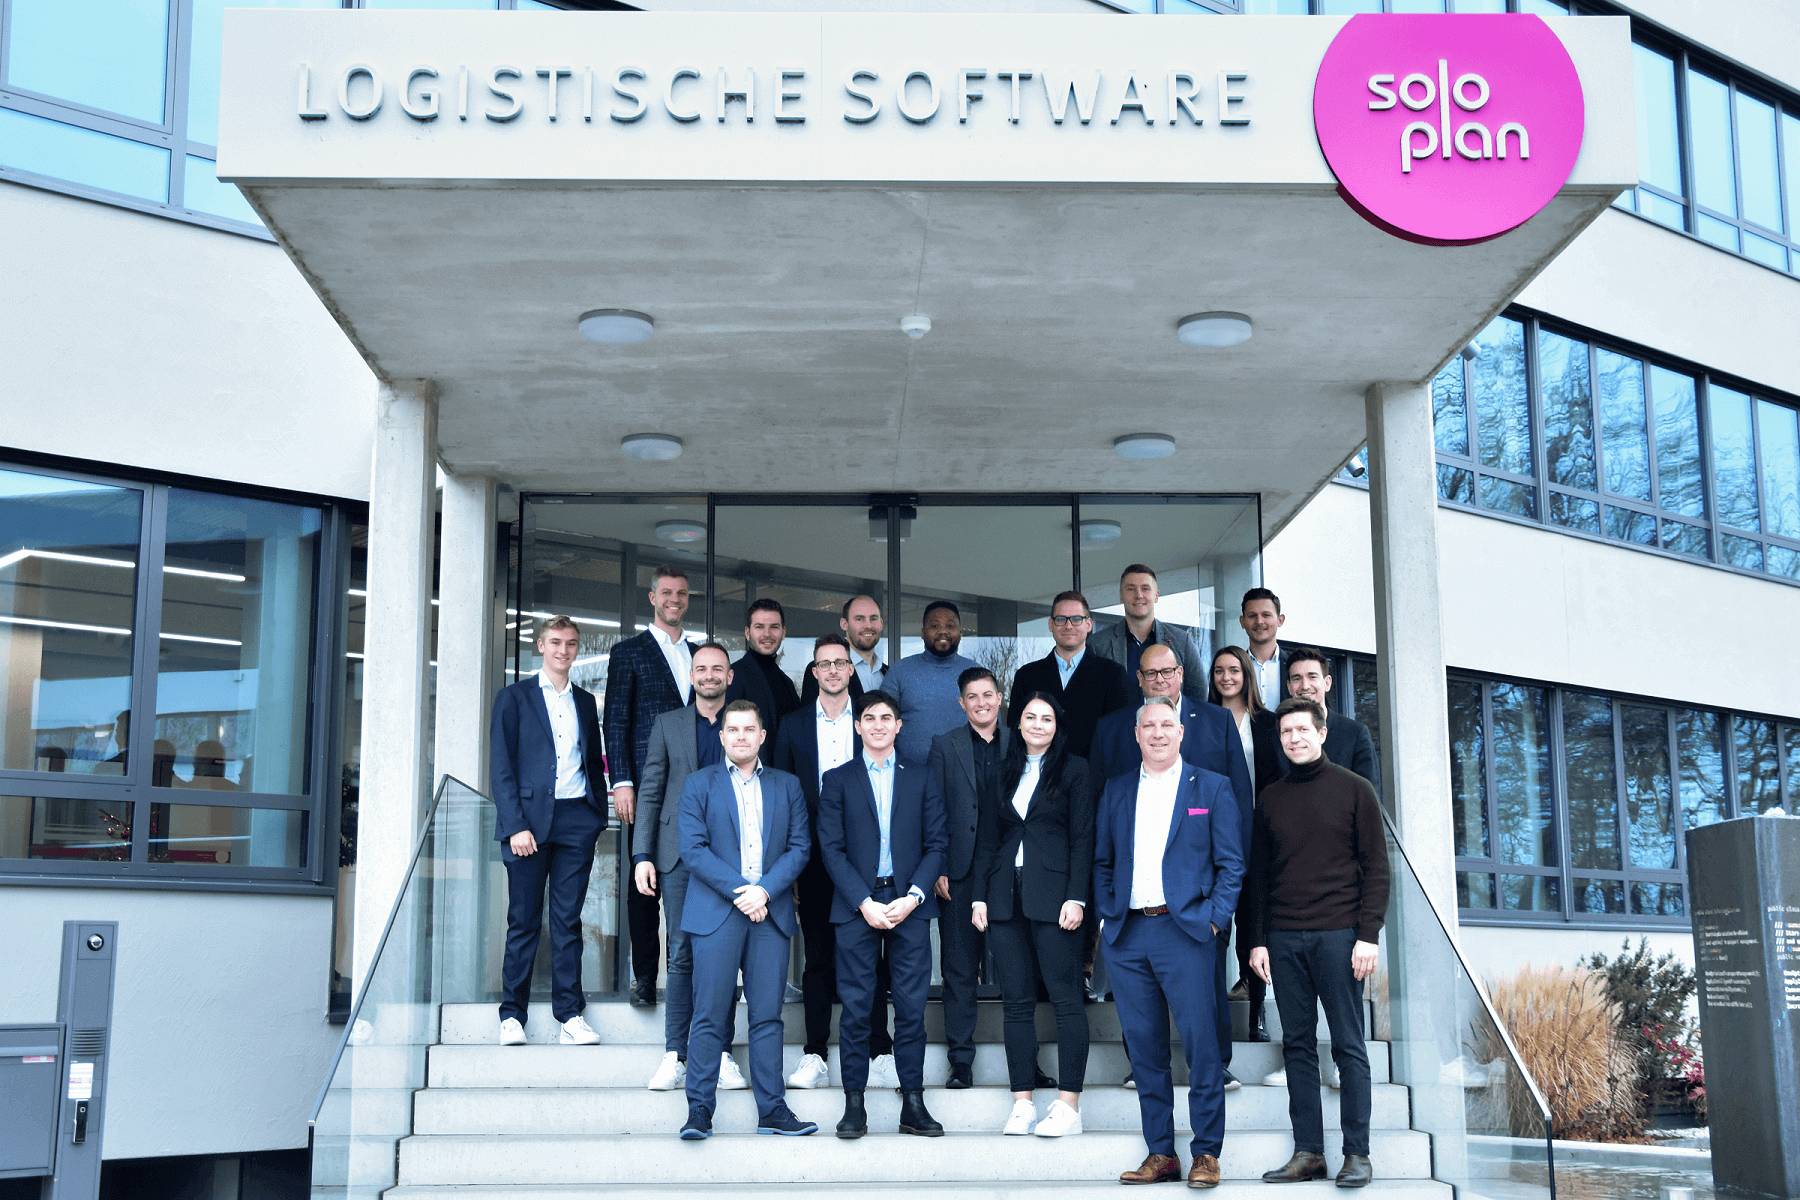 Erfolge feiern und das erworbene Wissen ausbauen – das internationale Sales Meeting der Soloplan GmbH